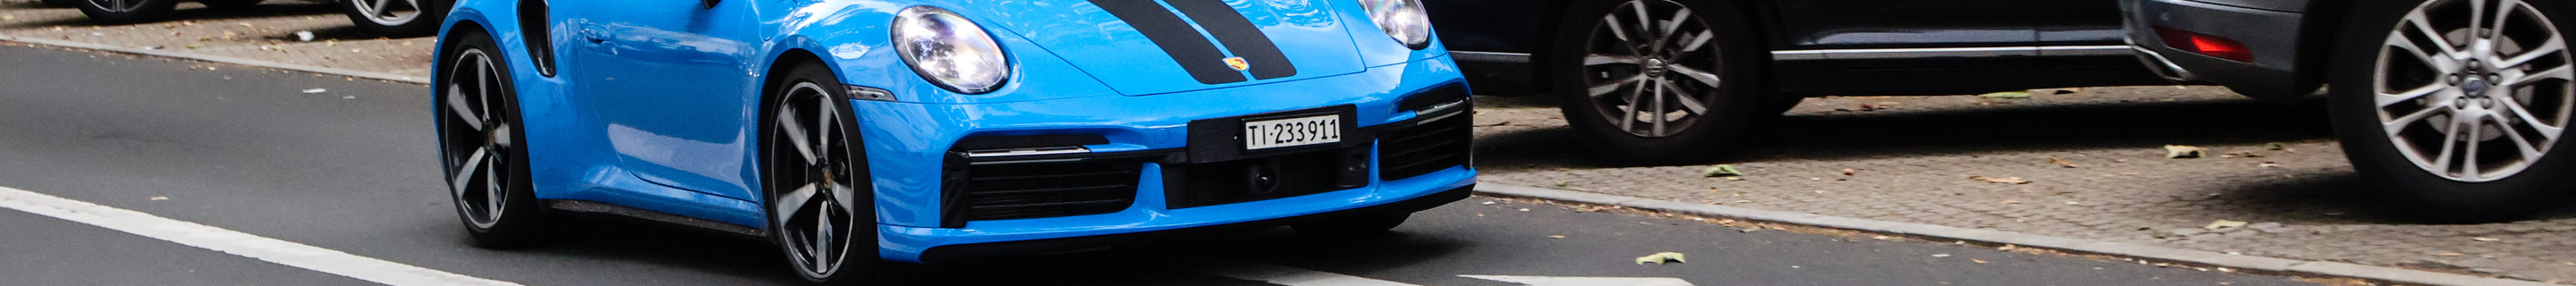 Porsche 992 Turbo S Cabriolet